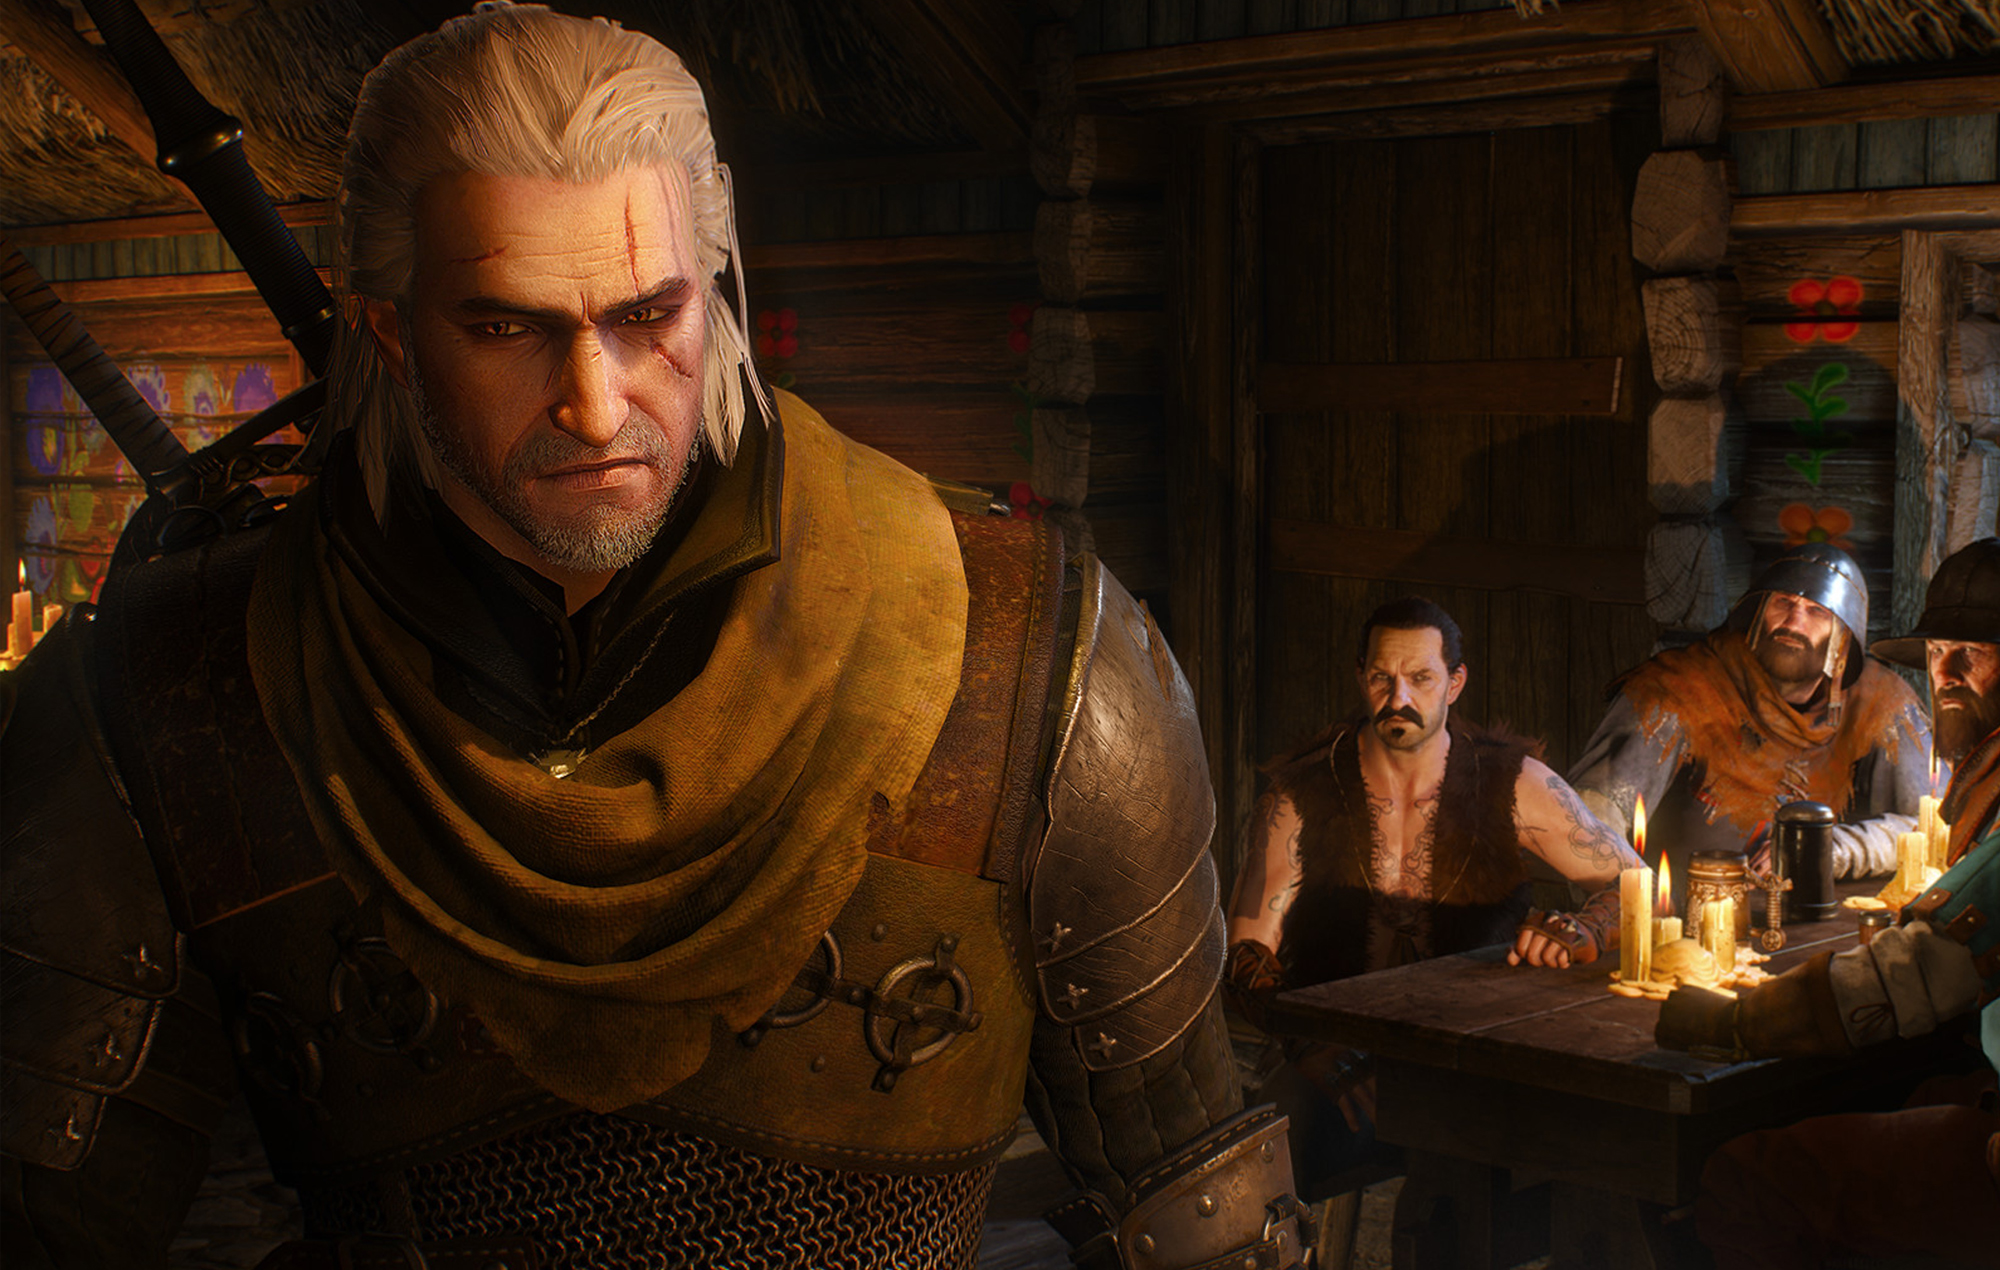 El desarrollador de 'The Witcher 3' eliminará algunos desnudos frontales "involuntarios" del juego